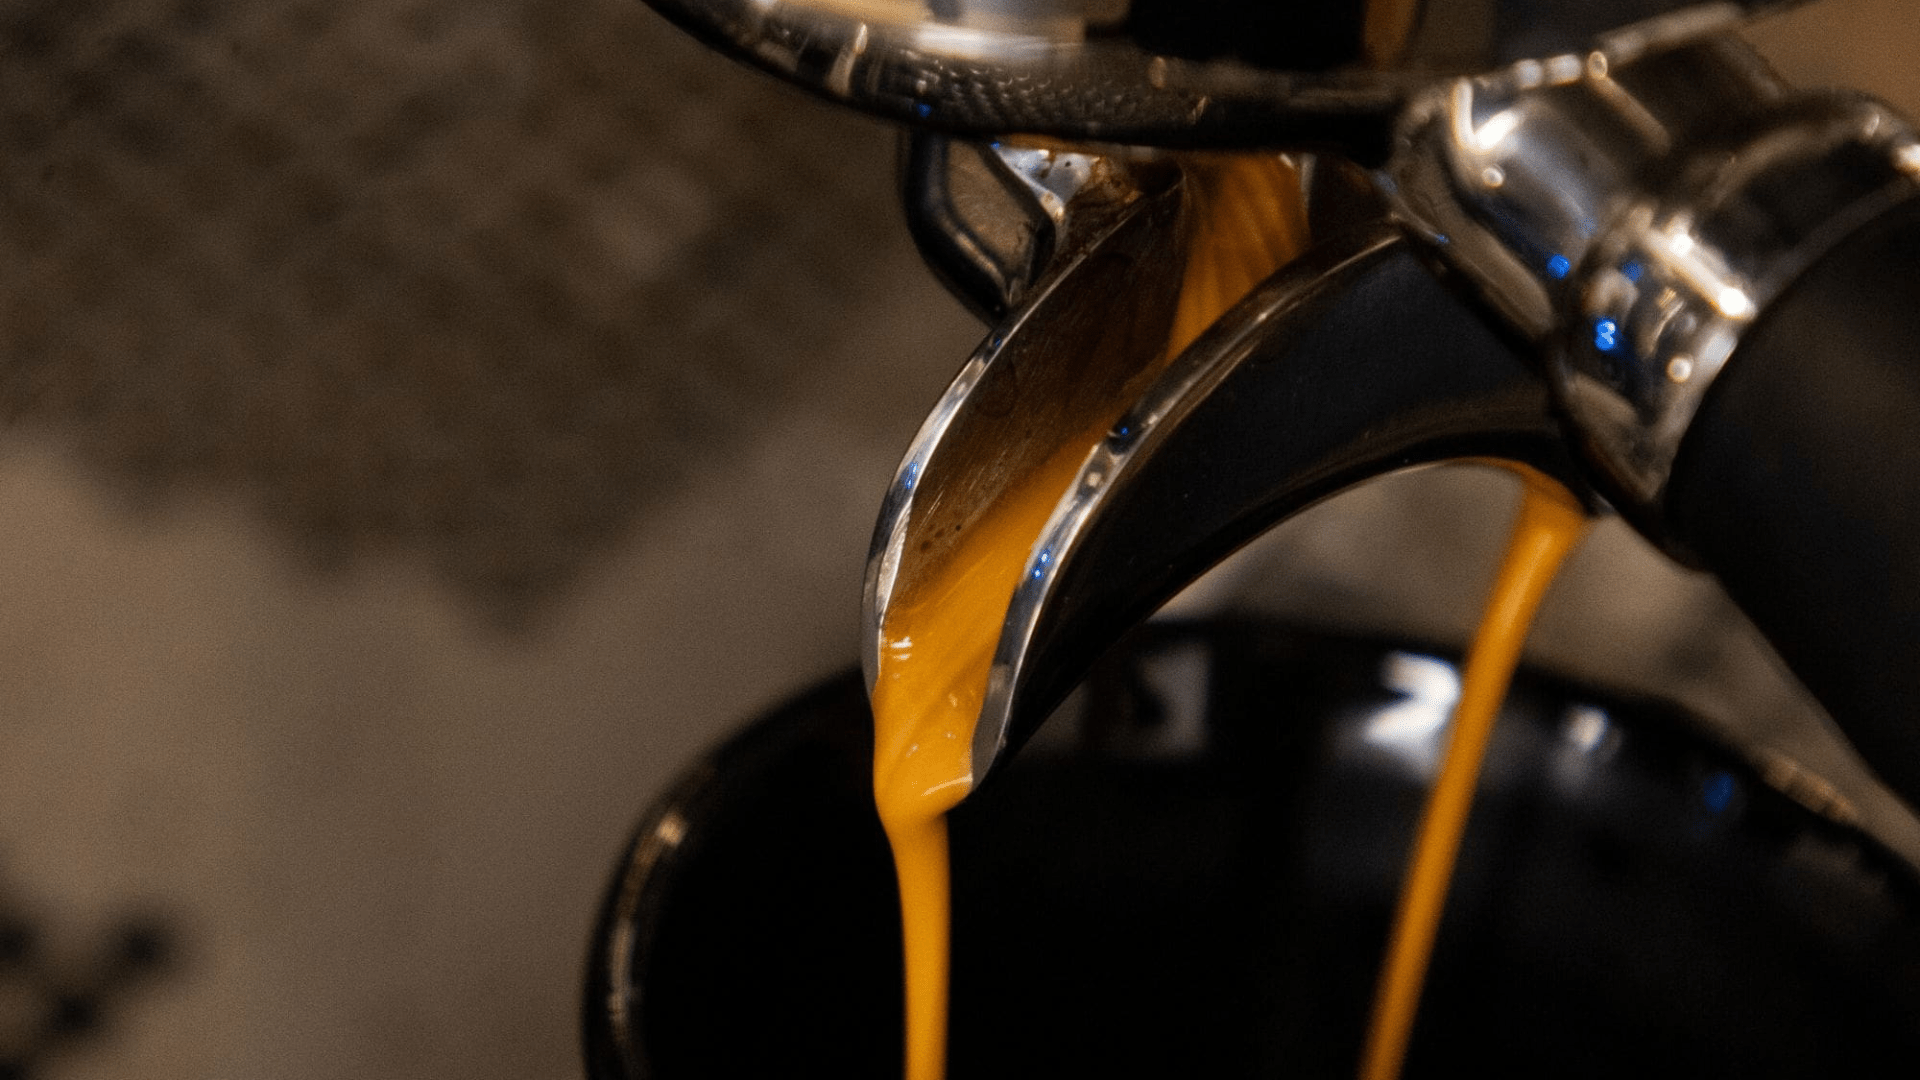 Comment programmer une dose d'espresso? - Café Barista